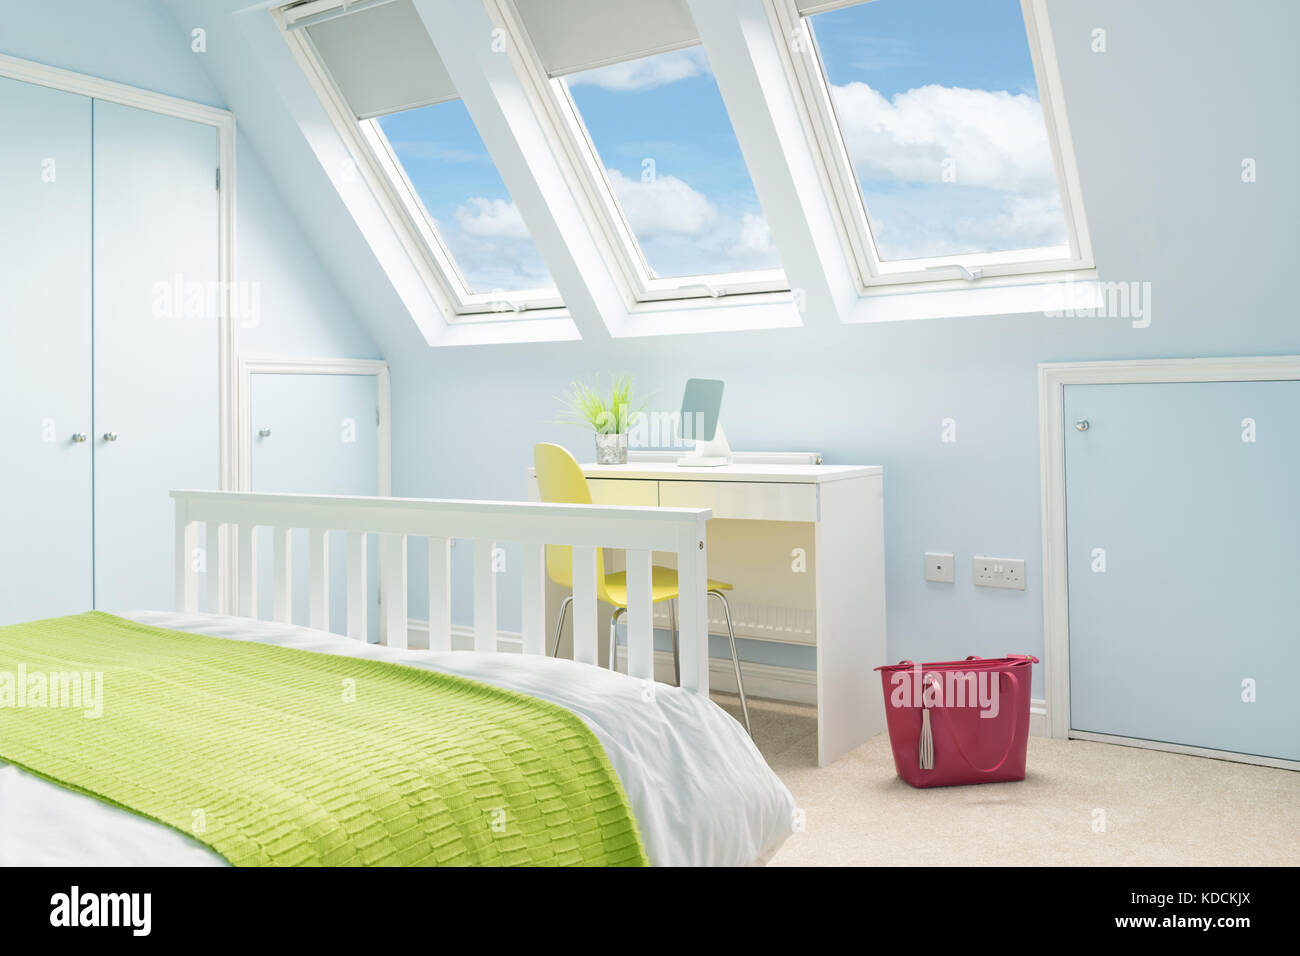 Ein helles, frisches Schlafzimmer im Loft mit Doppelbett, moderne Möbel und velux Oberlicht Fenster. Stockfoto